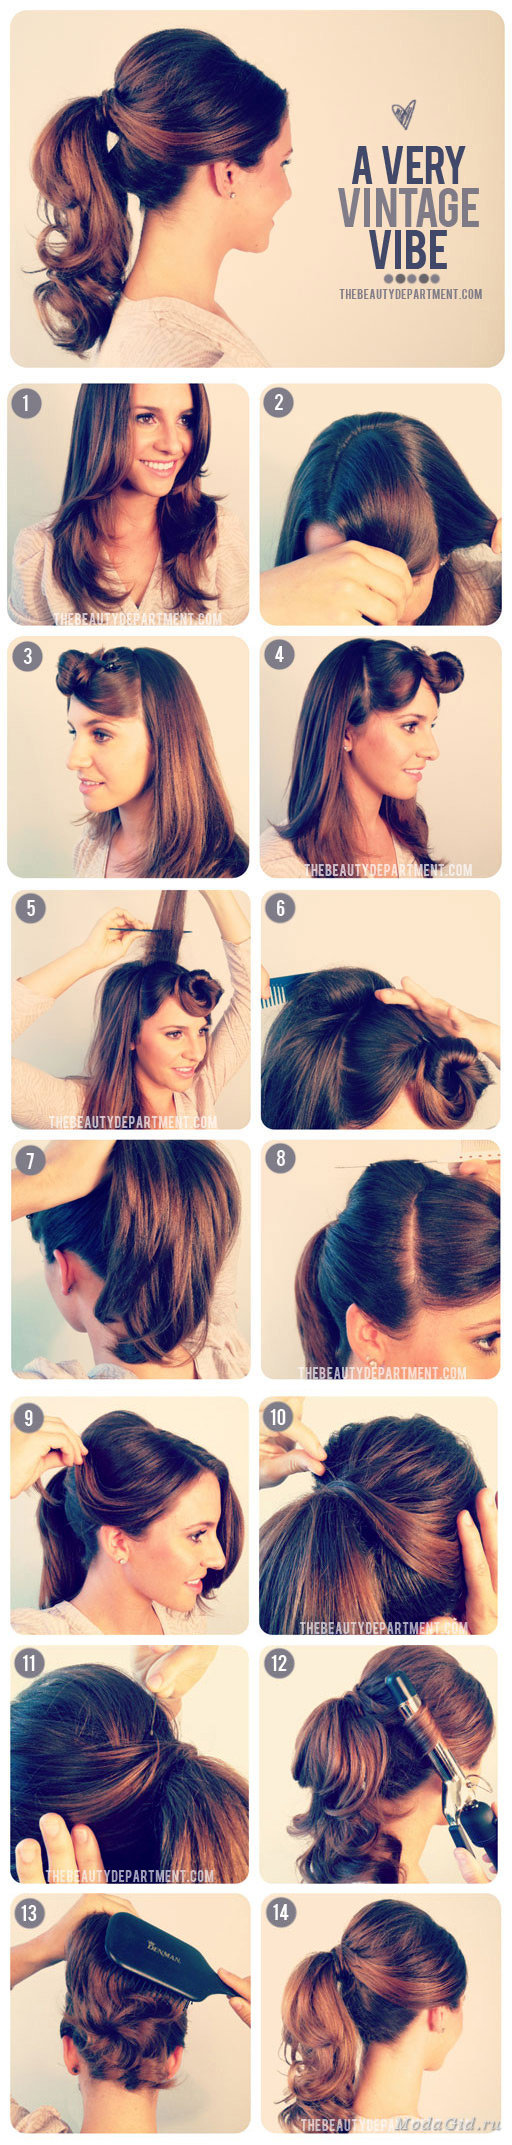 Как можно уложить волосы